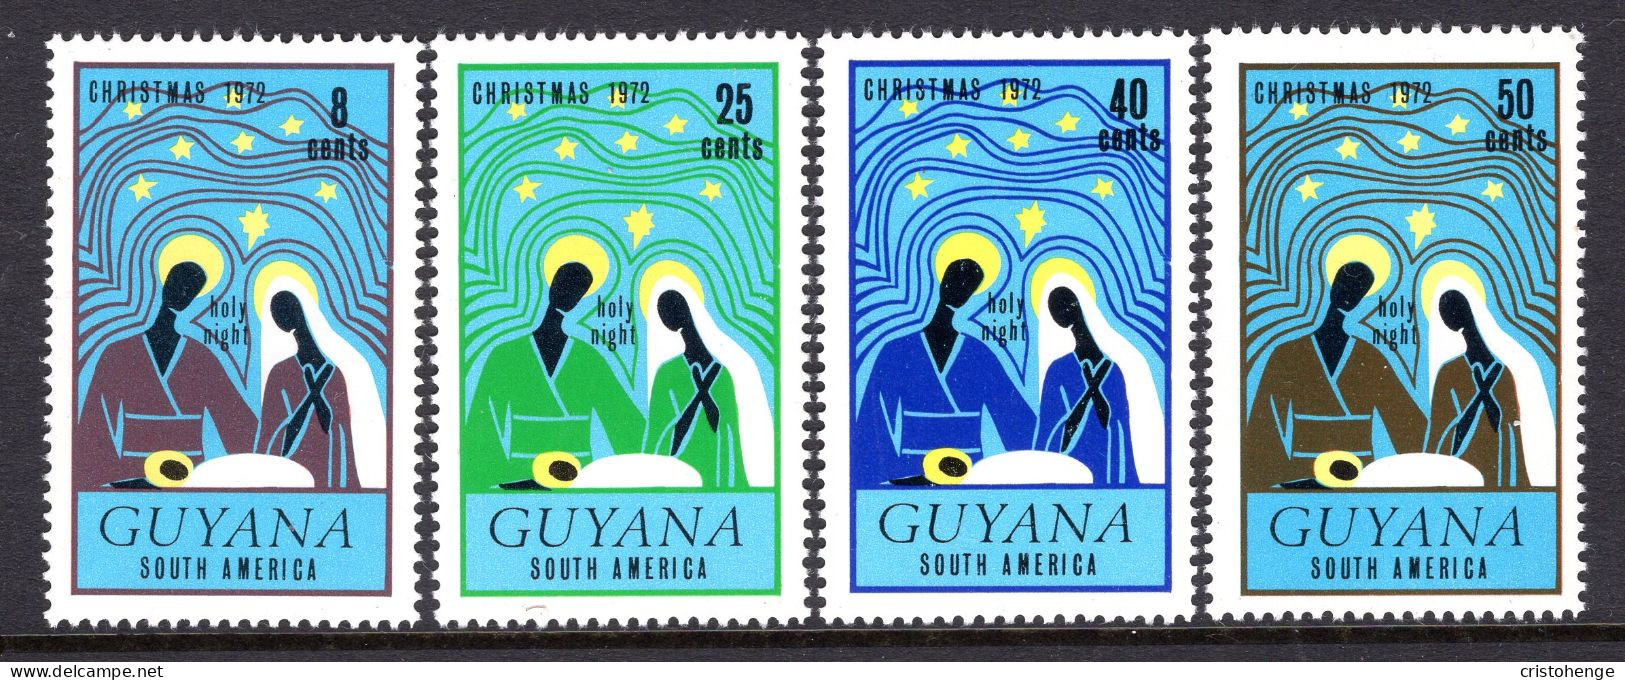 Guyana 1972 Christmas Set MNH (SG 577-580) - Guyana (1966-...)